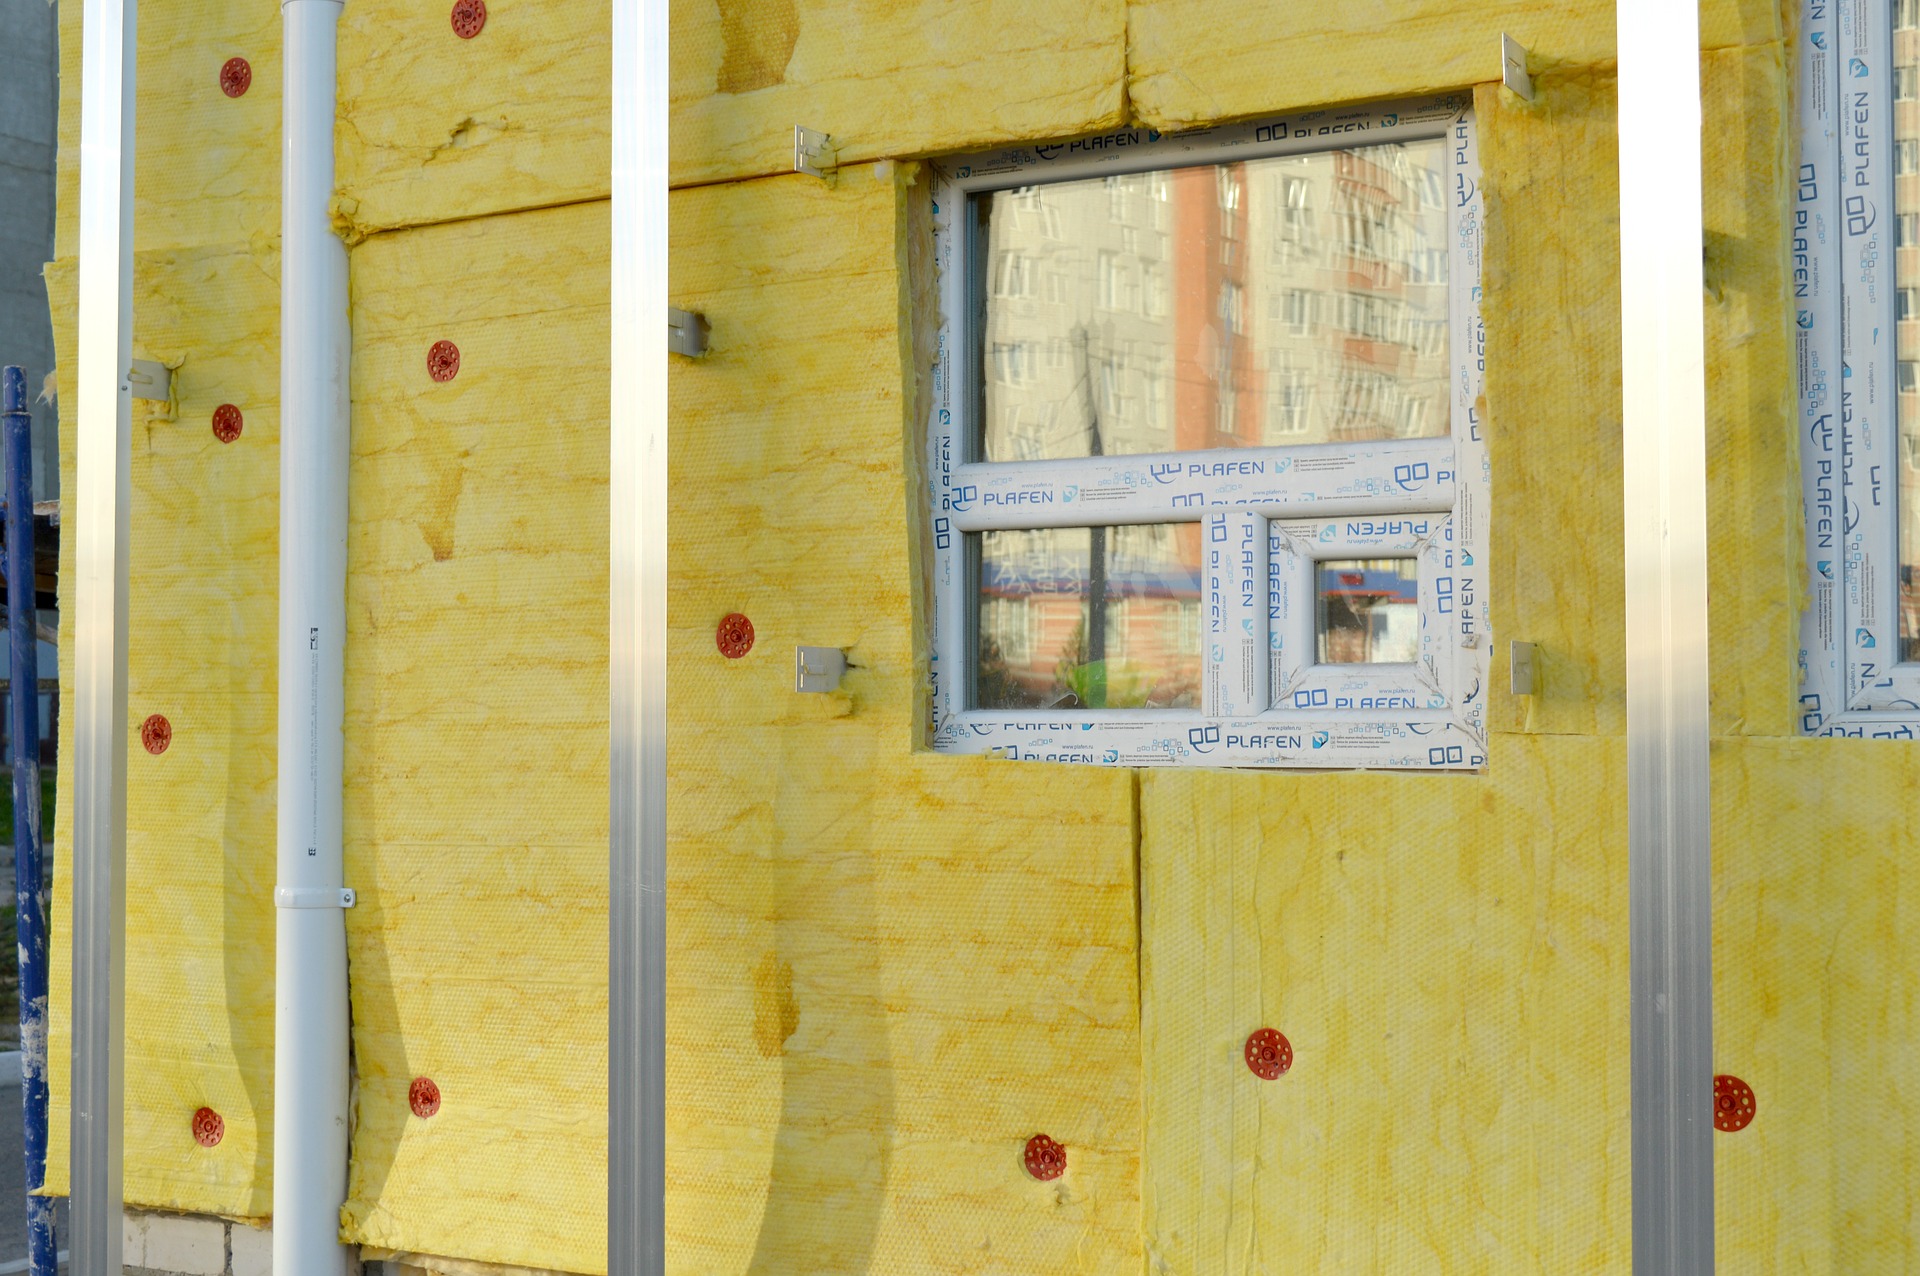 Waermedemmung-facade-insulation-978999_1920.jpg